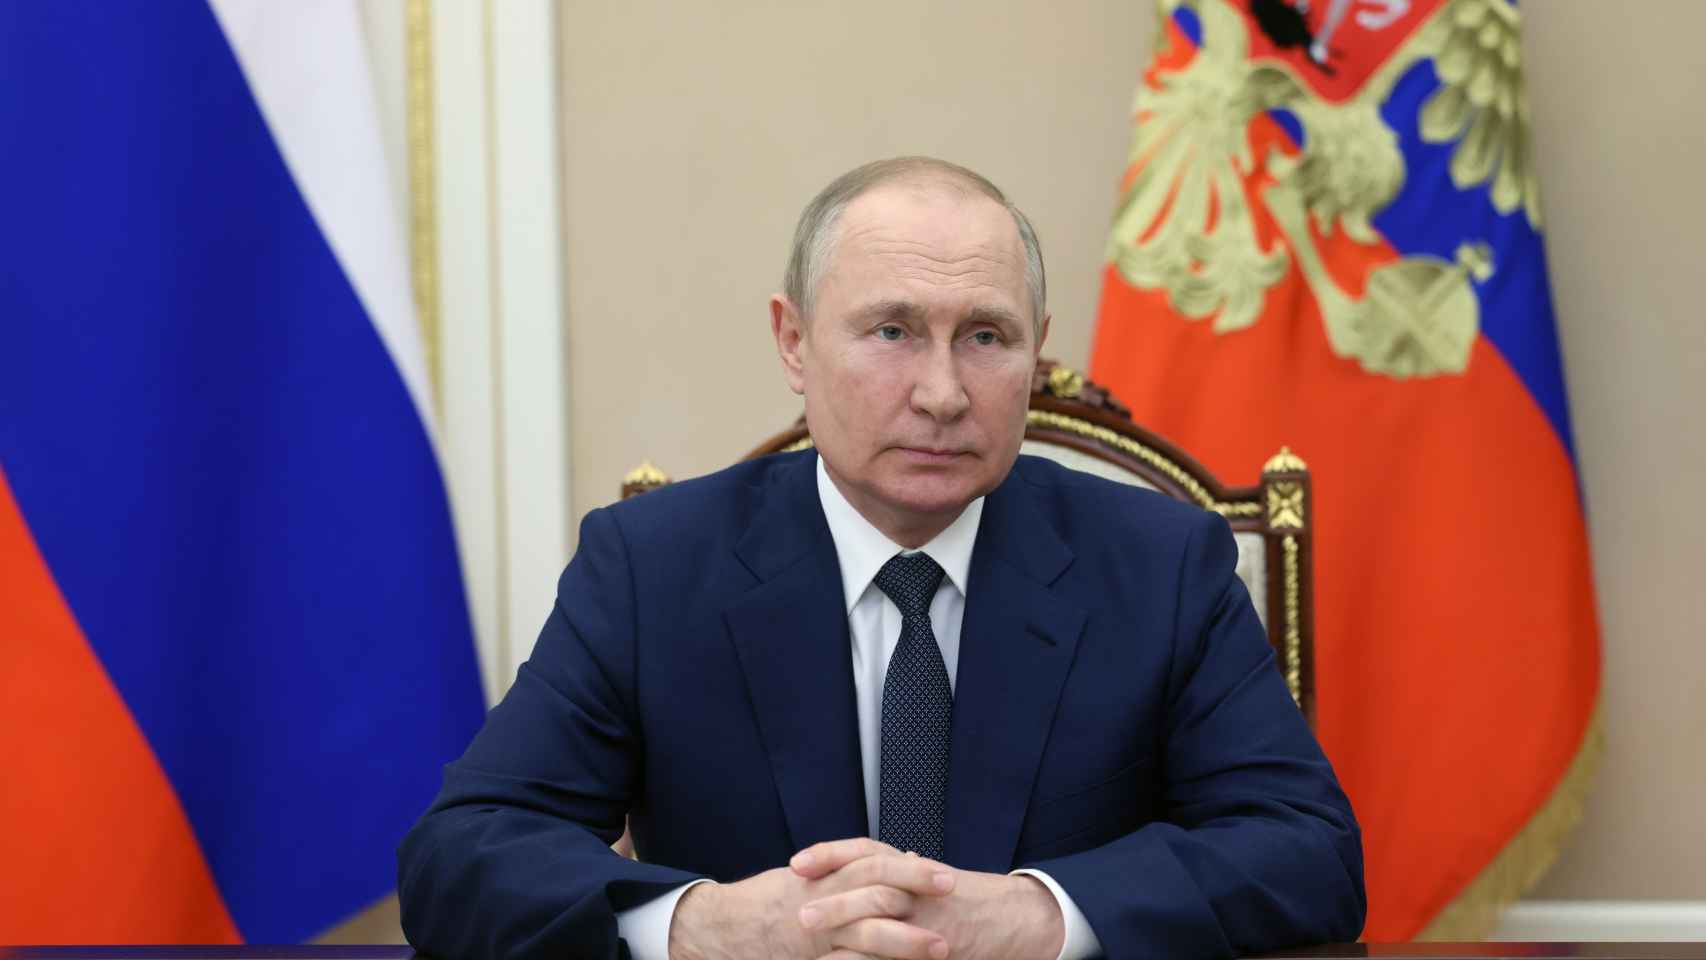 El presidente ruso, Vladimir Putin, durante un discurso a la nación el pasado jueves 30 de junio